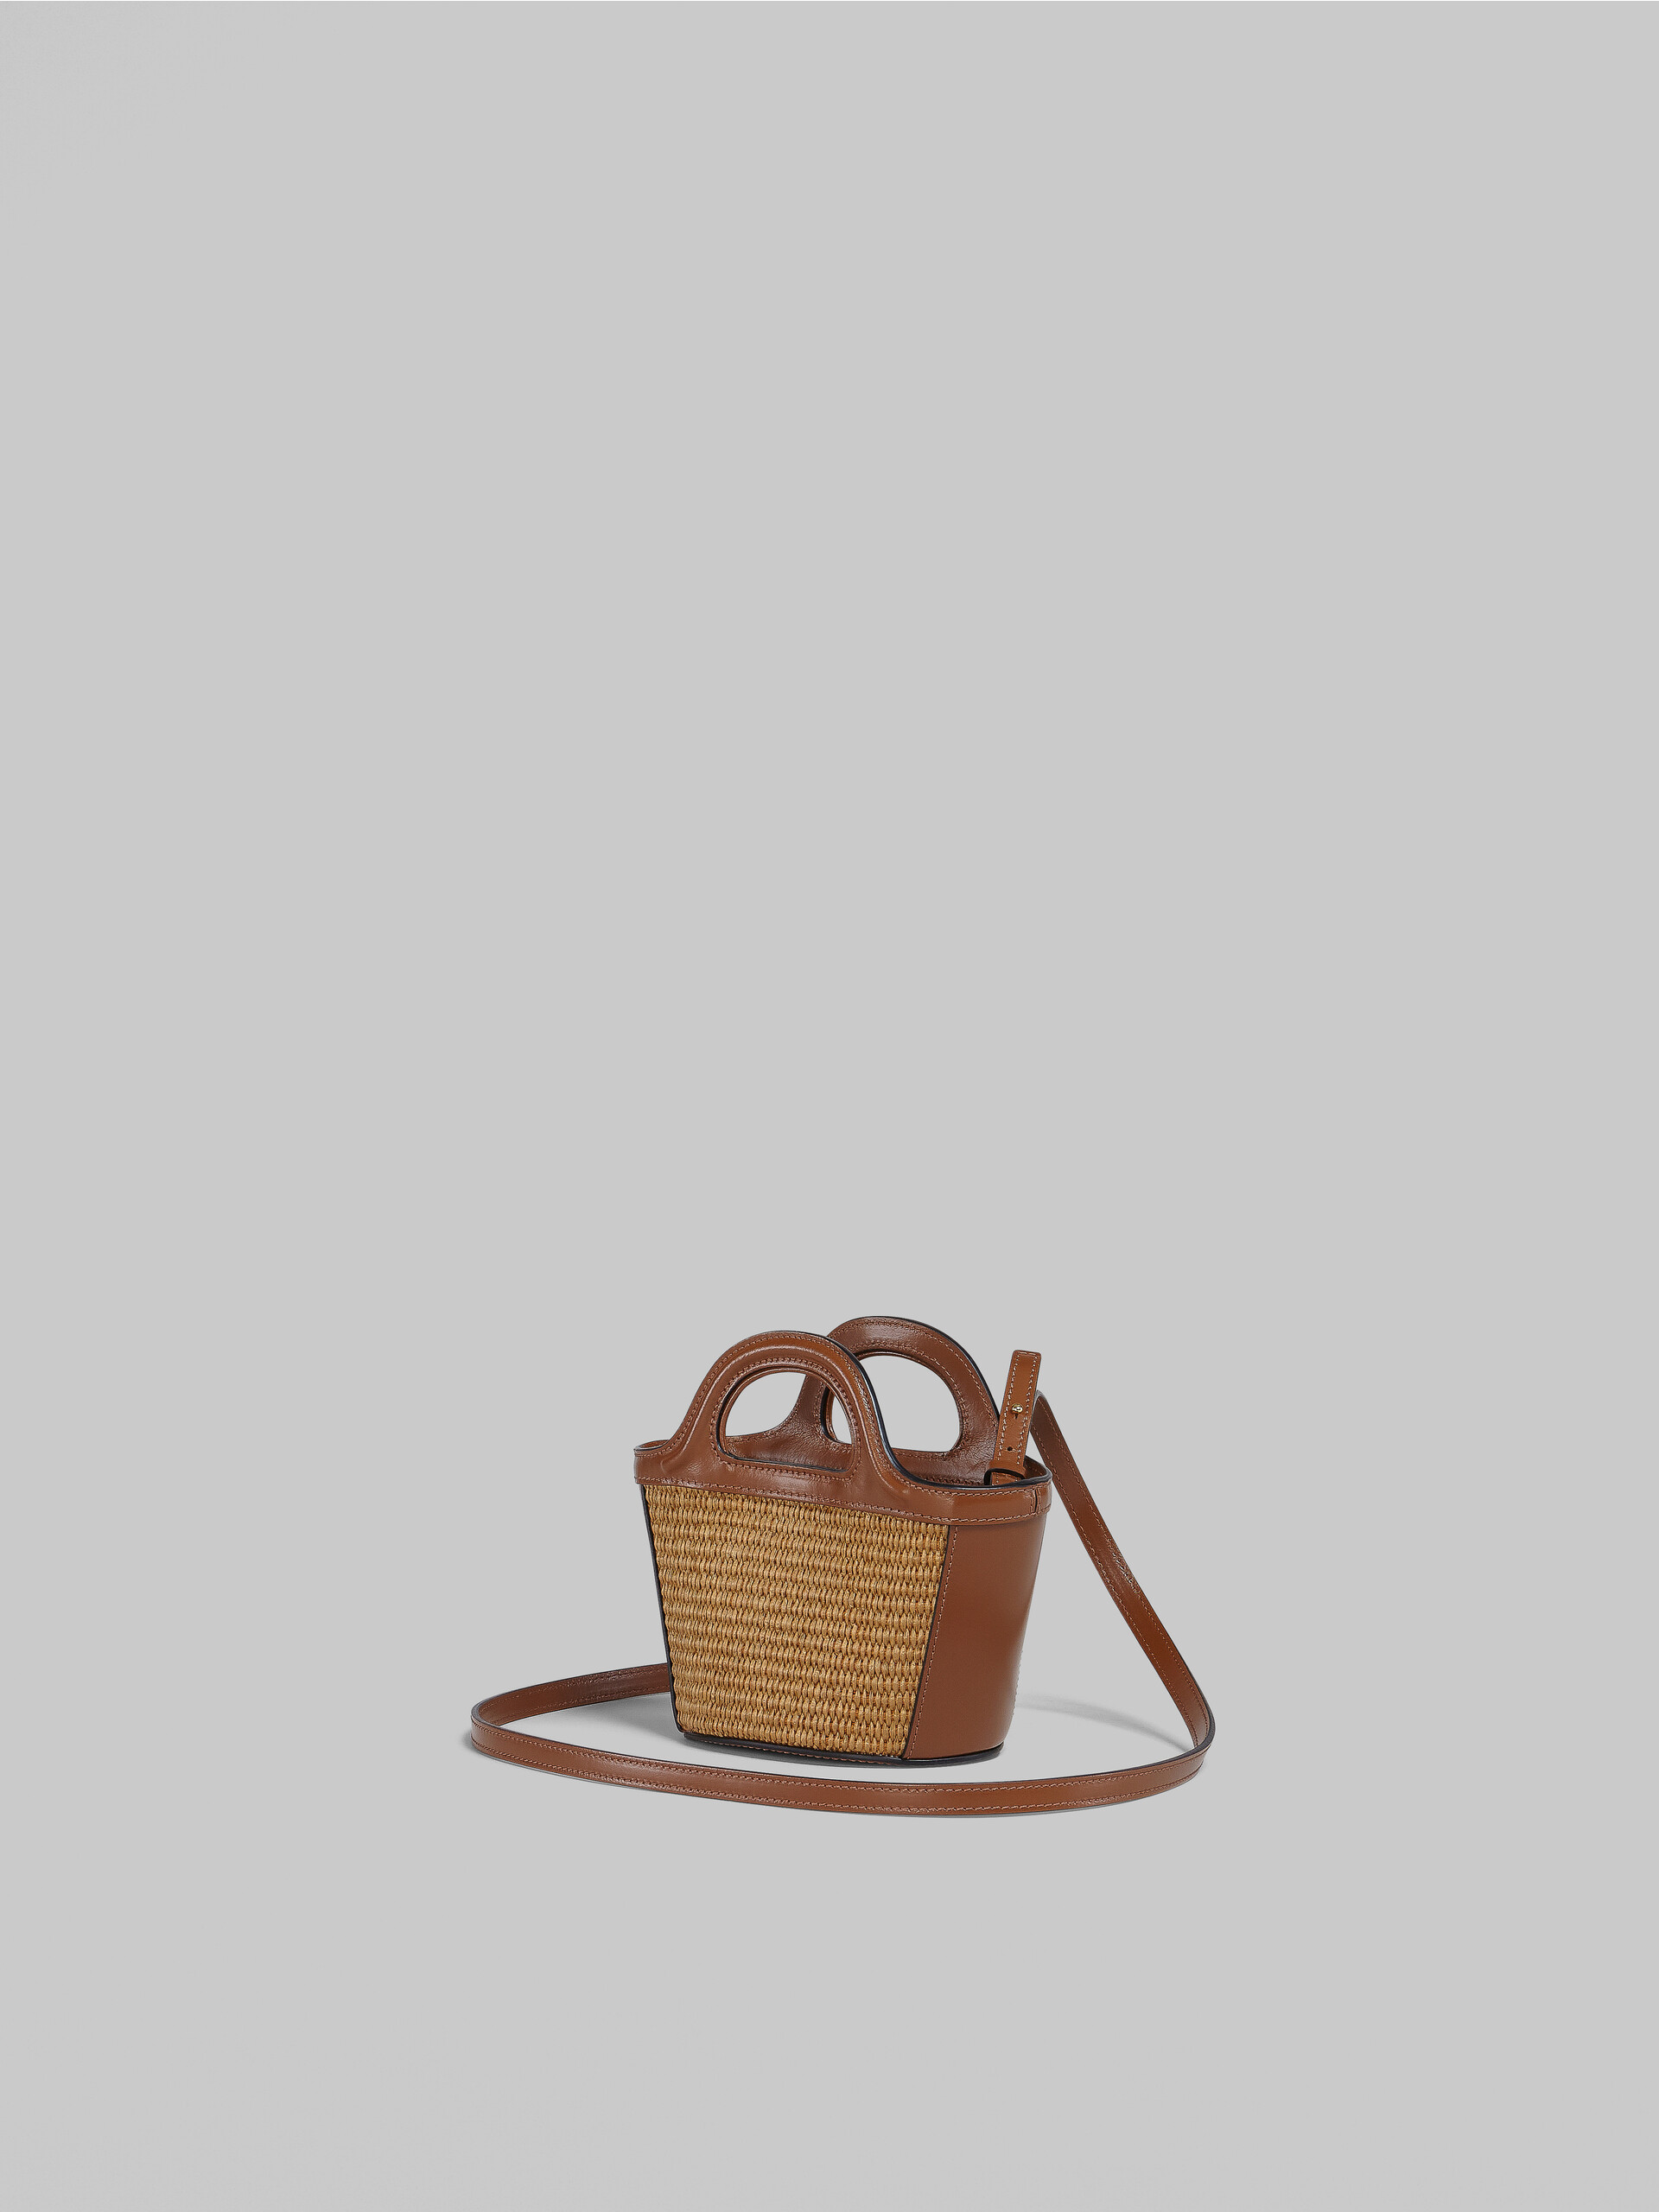 Microbolso Tropicalia de piel marrón y rafia - Bolsos de mano - Image 3